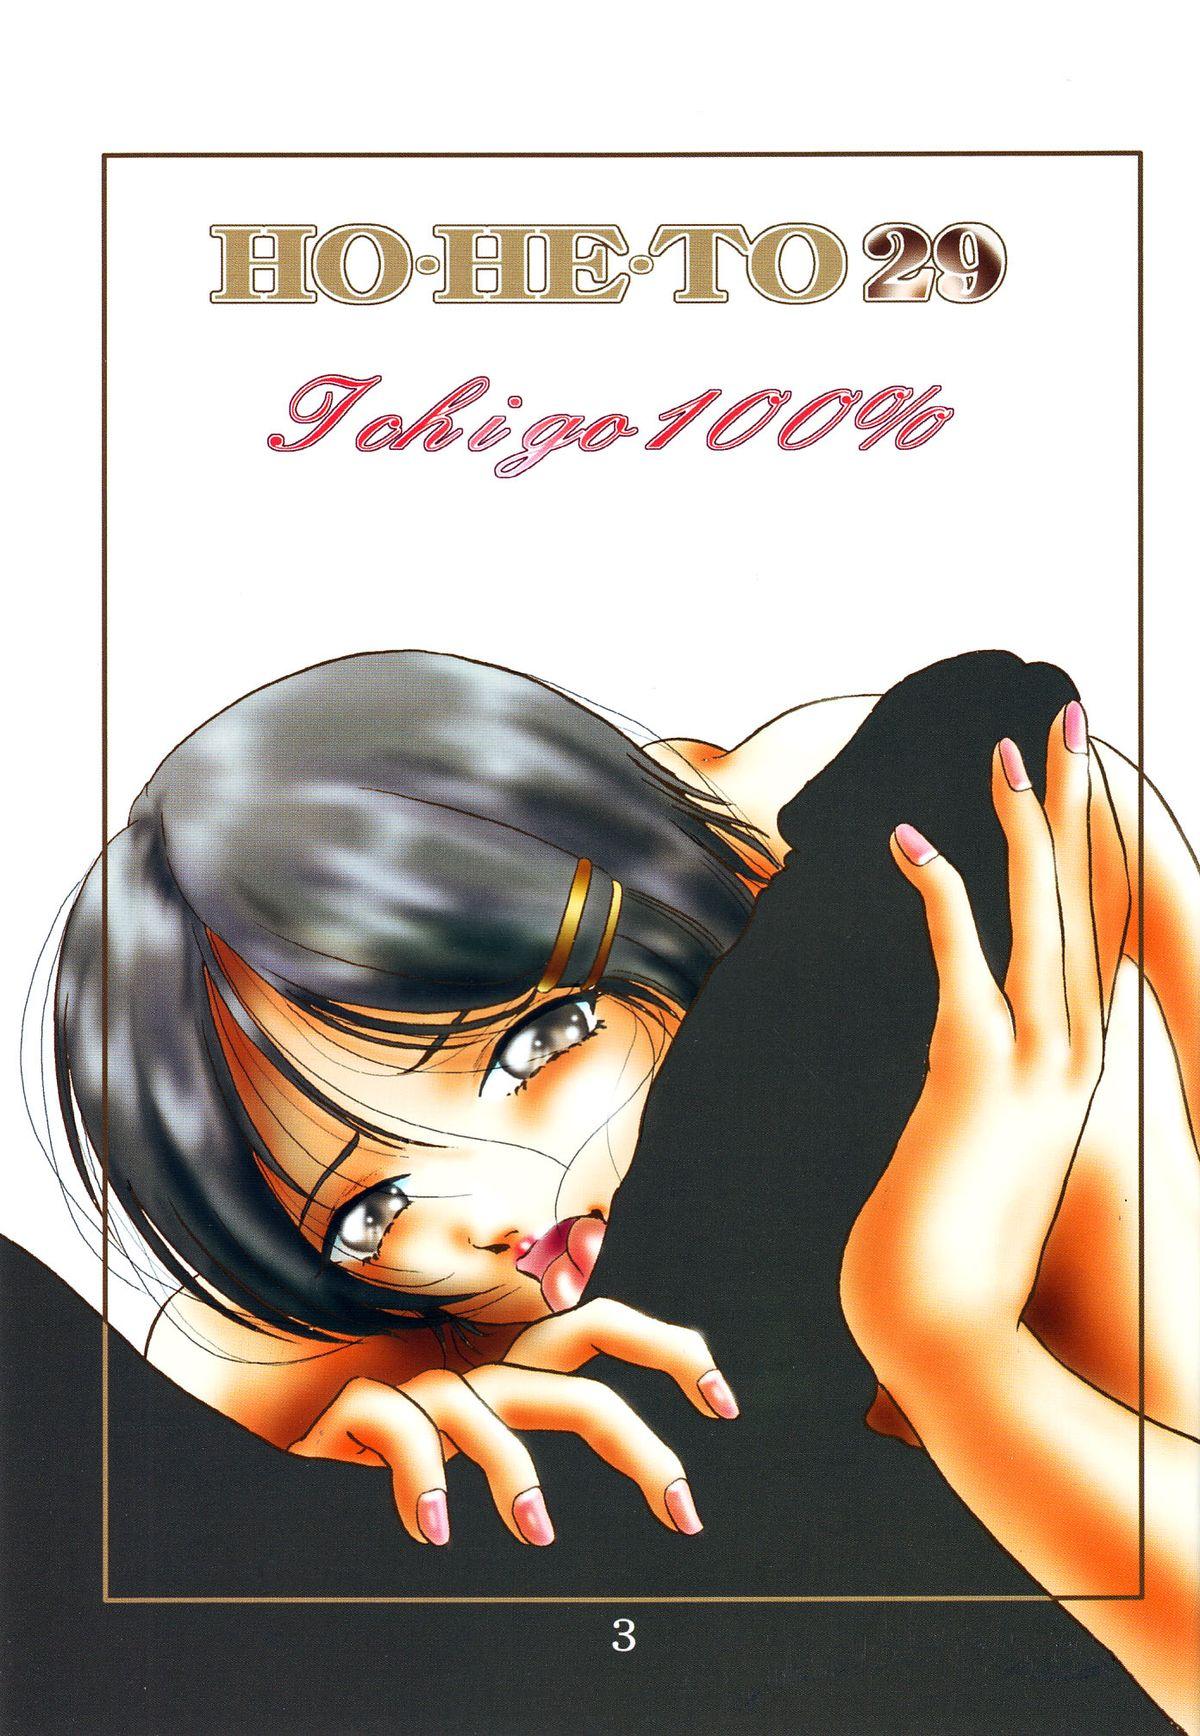 Foursome HOHETO 29 - Ichigo 100 Hiddencam - Page 2